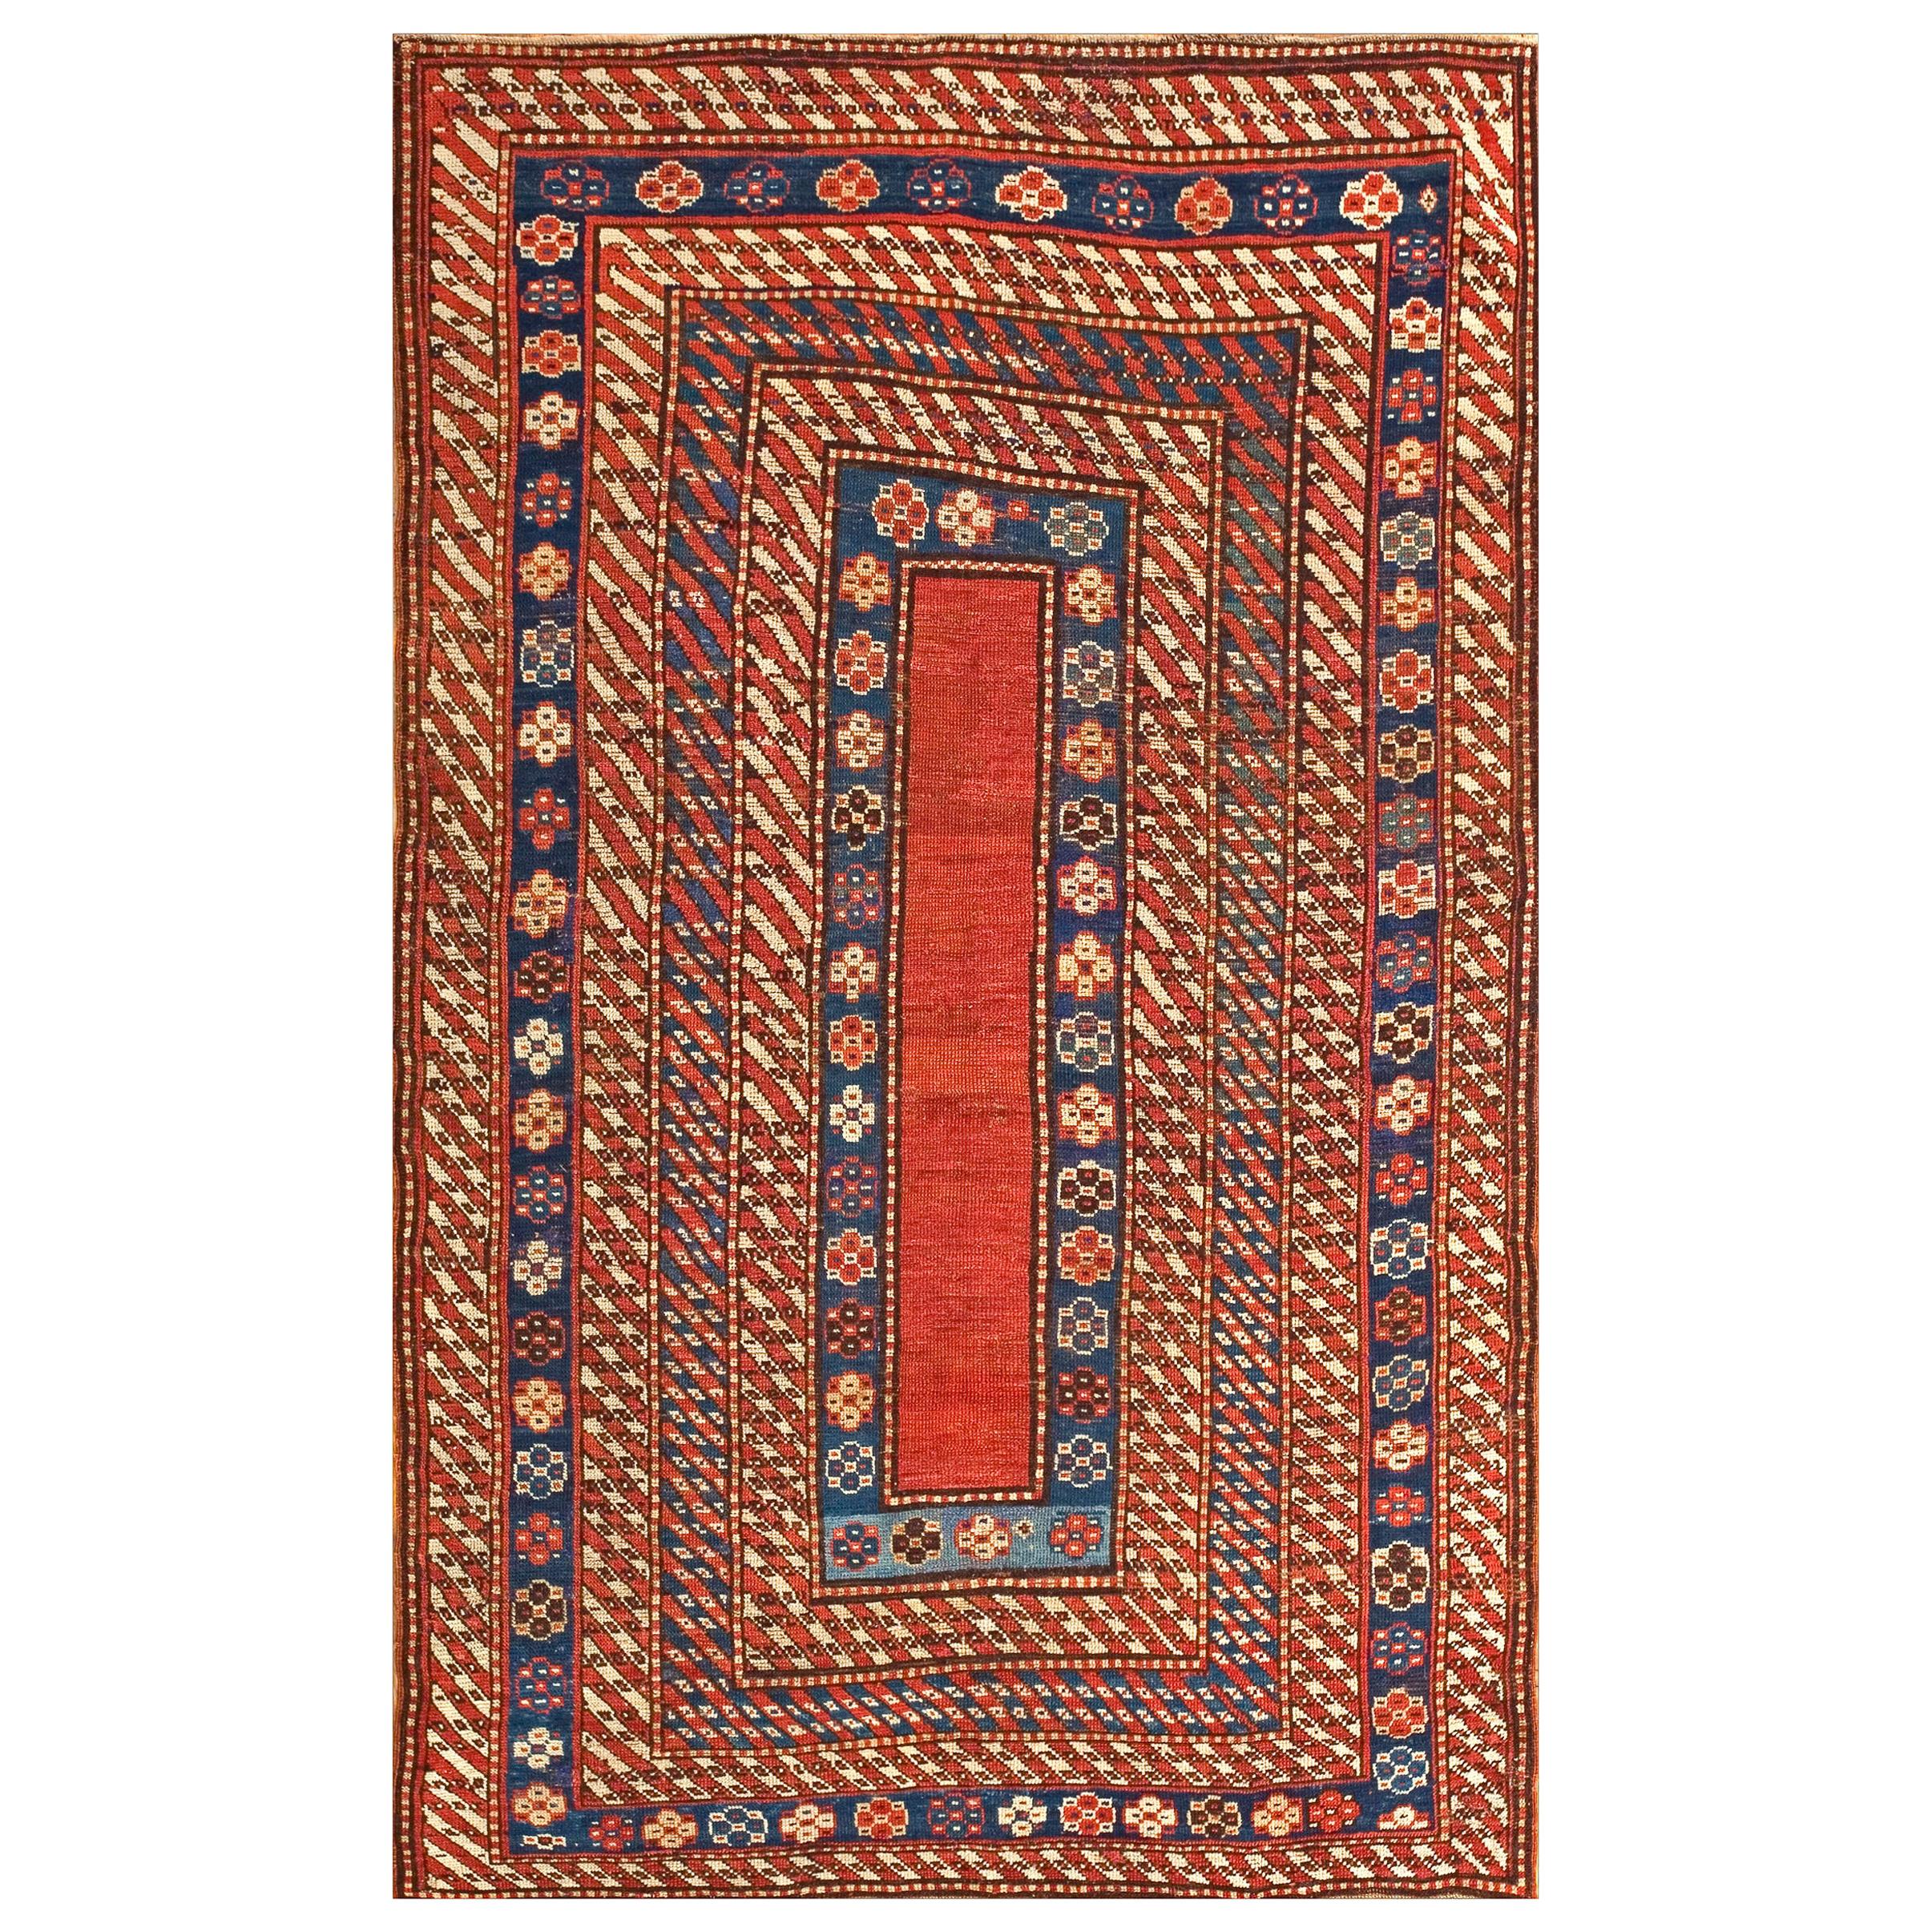 19th Century Caucasian Kazak Carpet ( 4' x 6'10" - 122 x 208 )